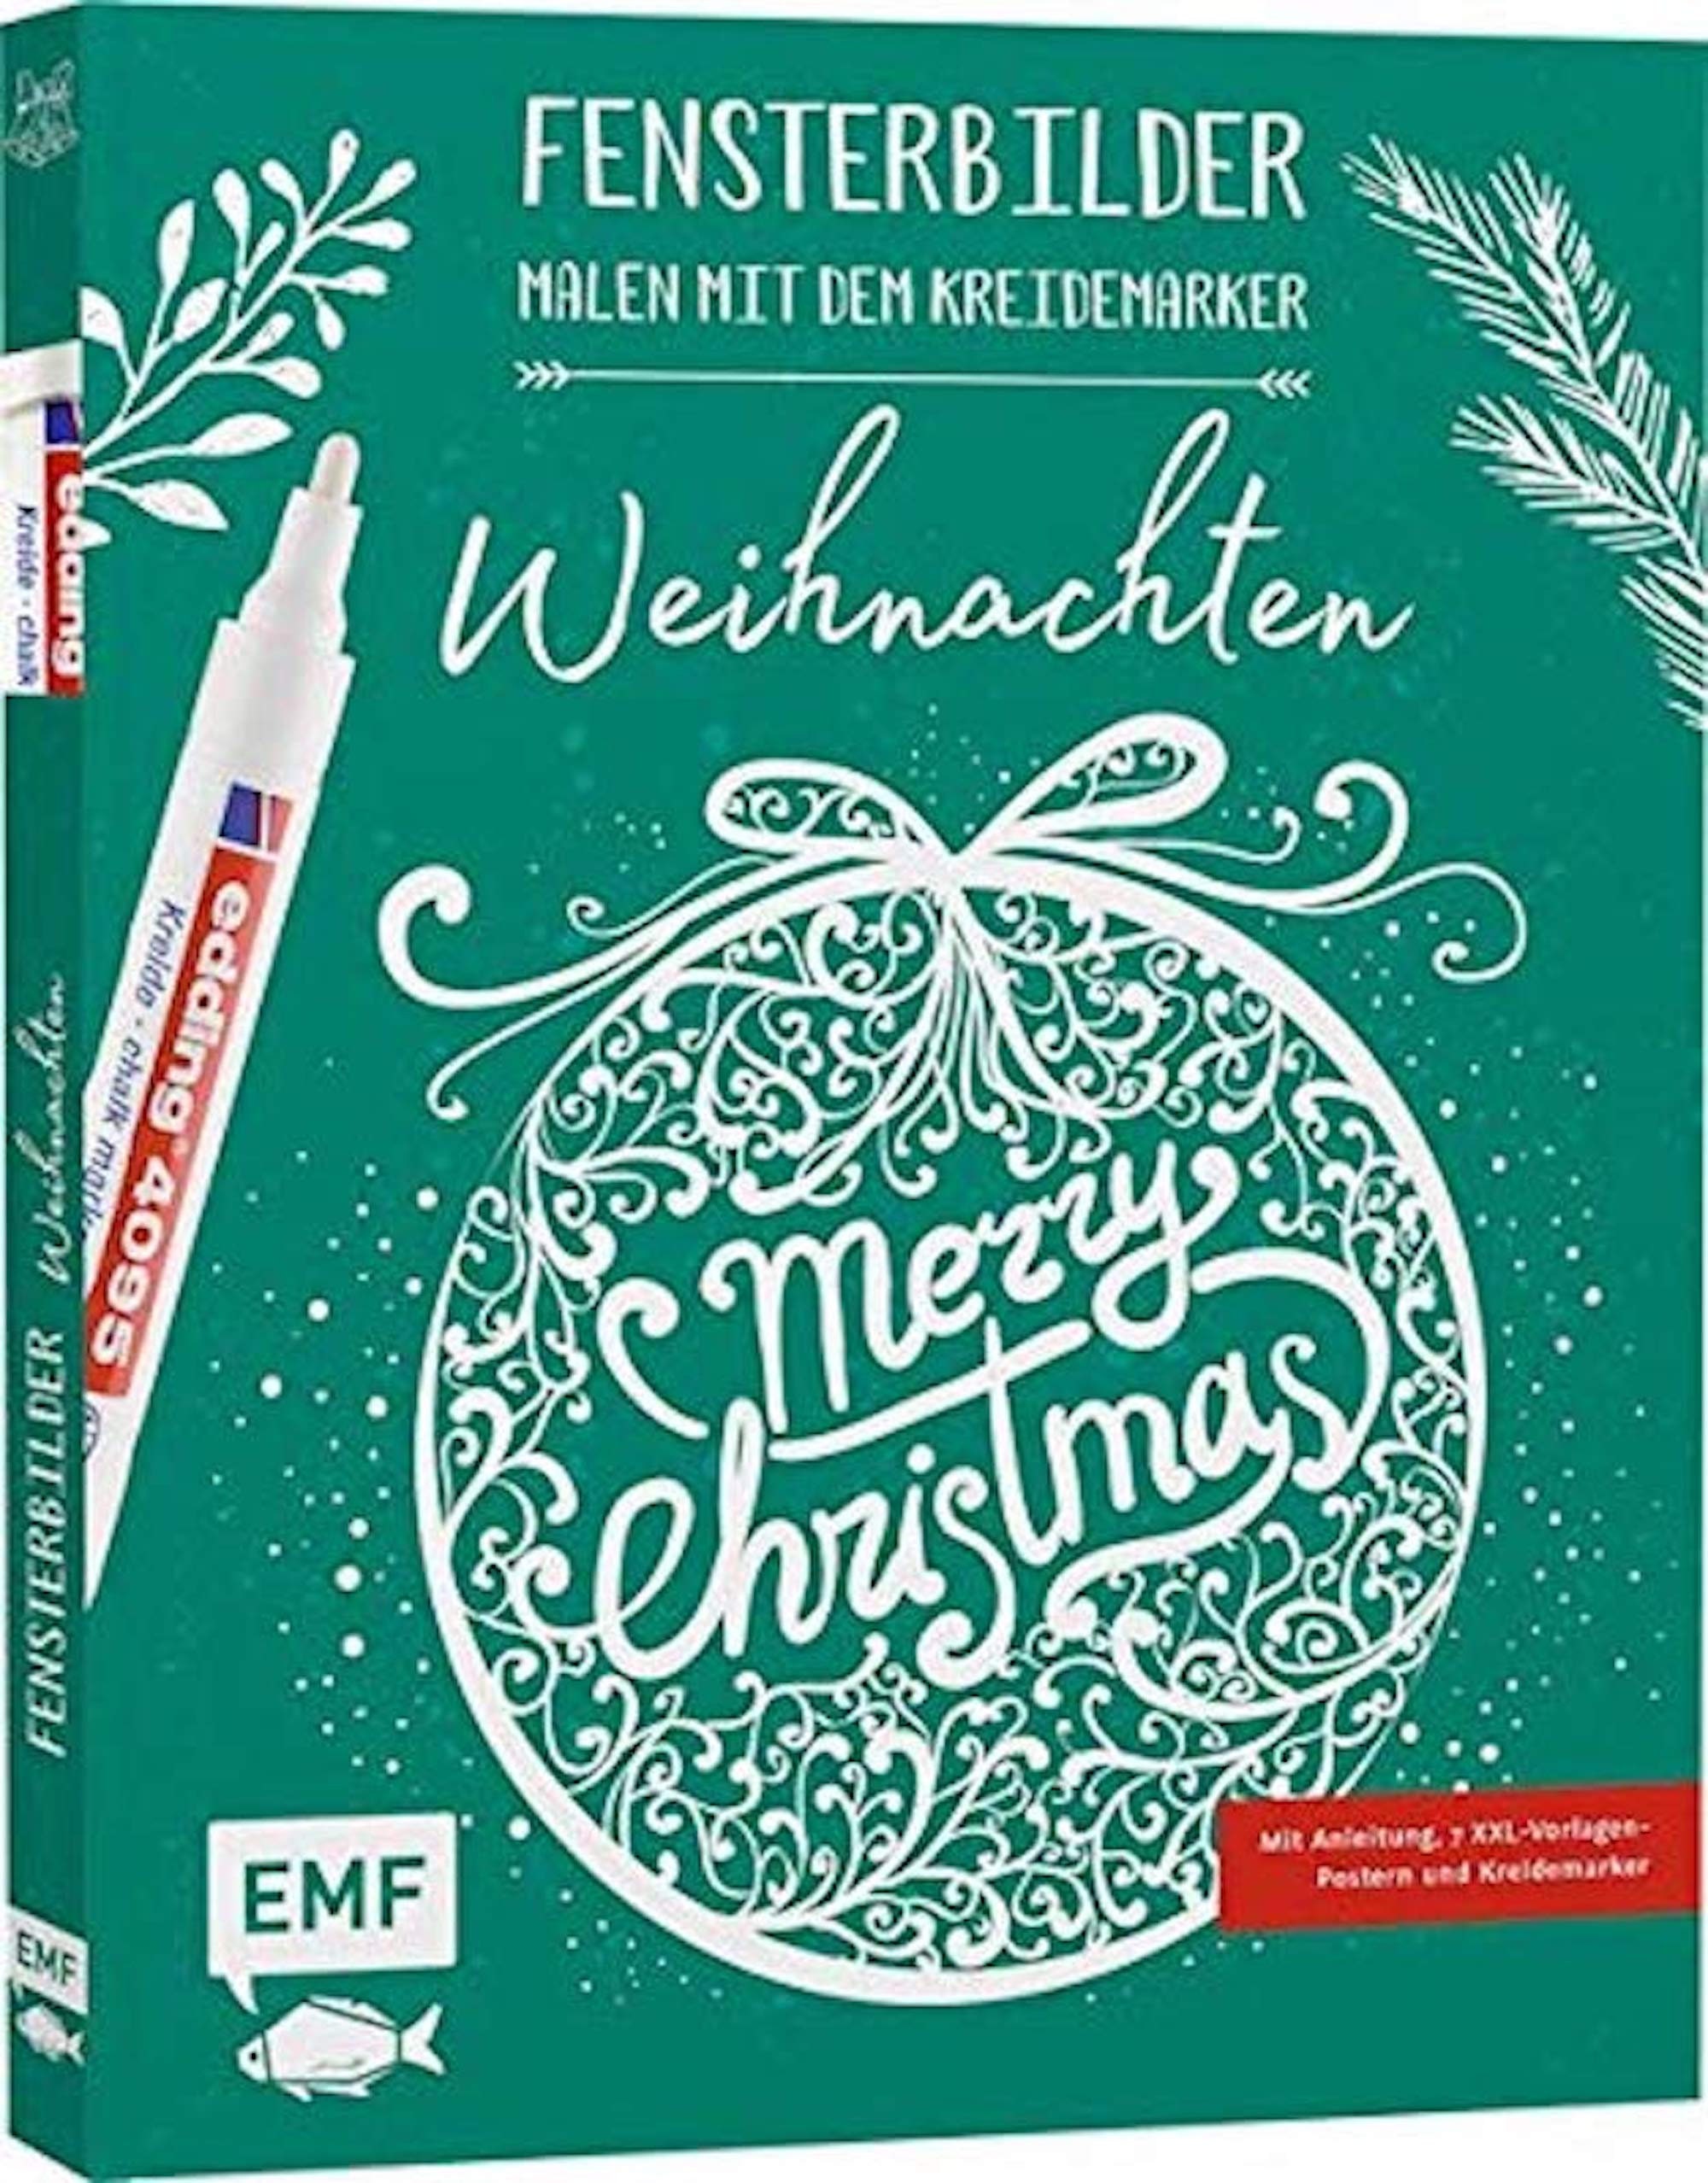 Fensterbilder  Malen mit dem Kreidemarker  Weihnachten  EMF Verlag